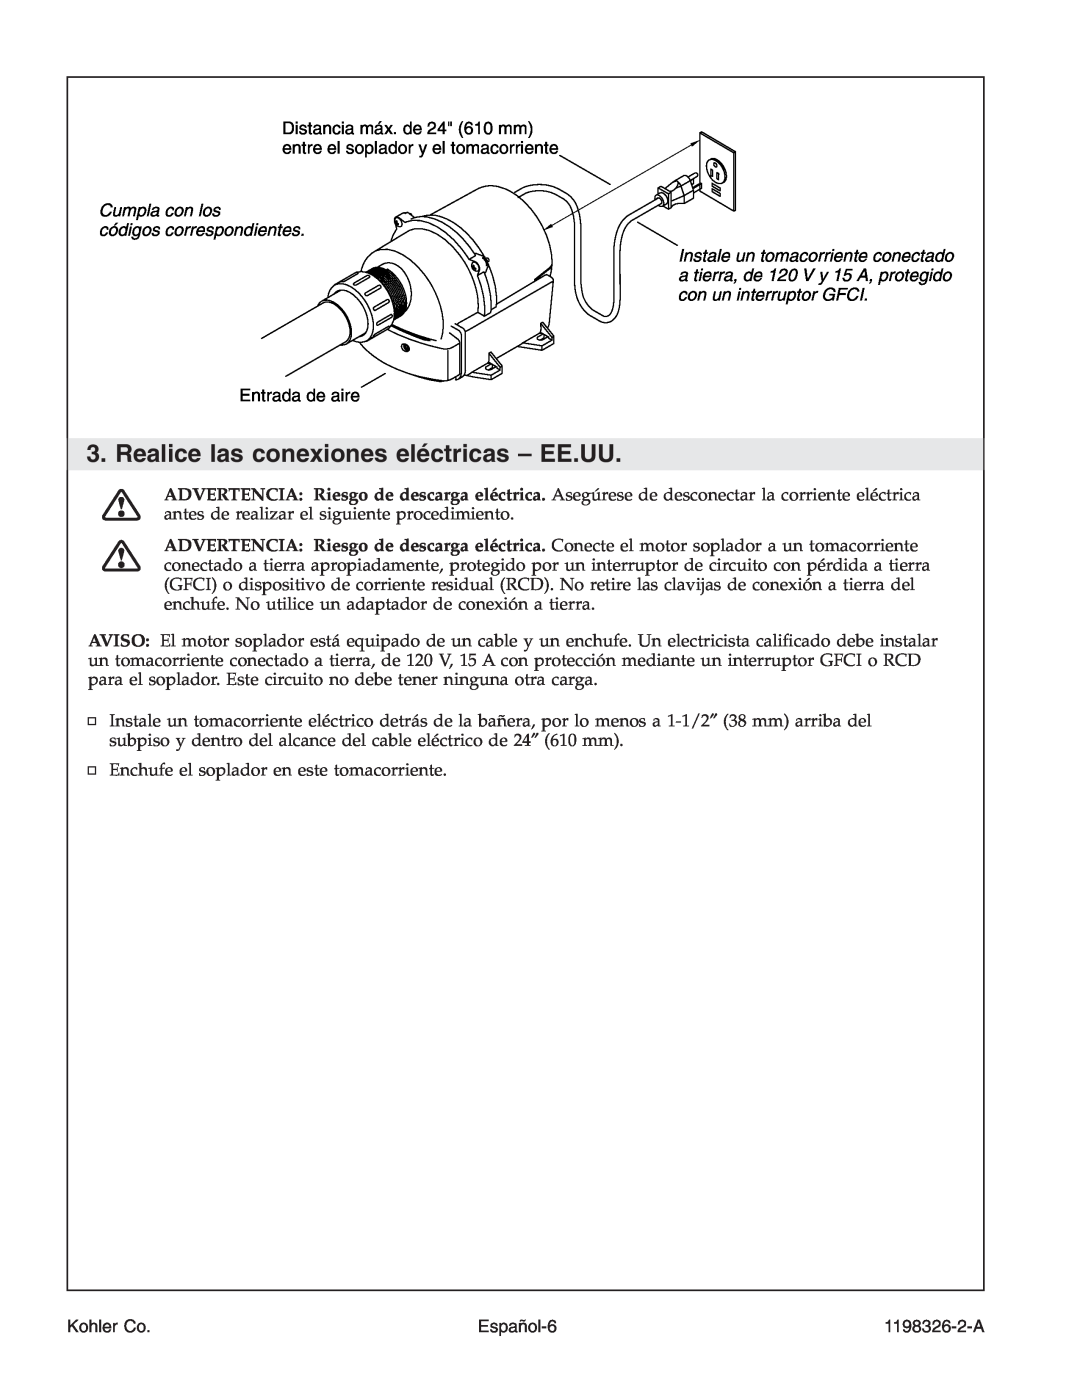 Kohler 1198326-2-A manual Realice las conexiones eléctricas - EE.UU, Cumpla con los códigos correspondientes, Español-6 